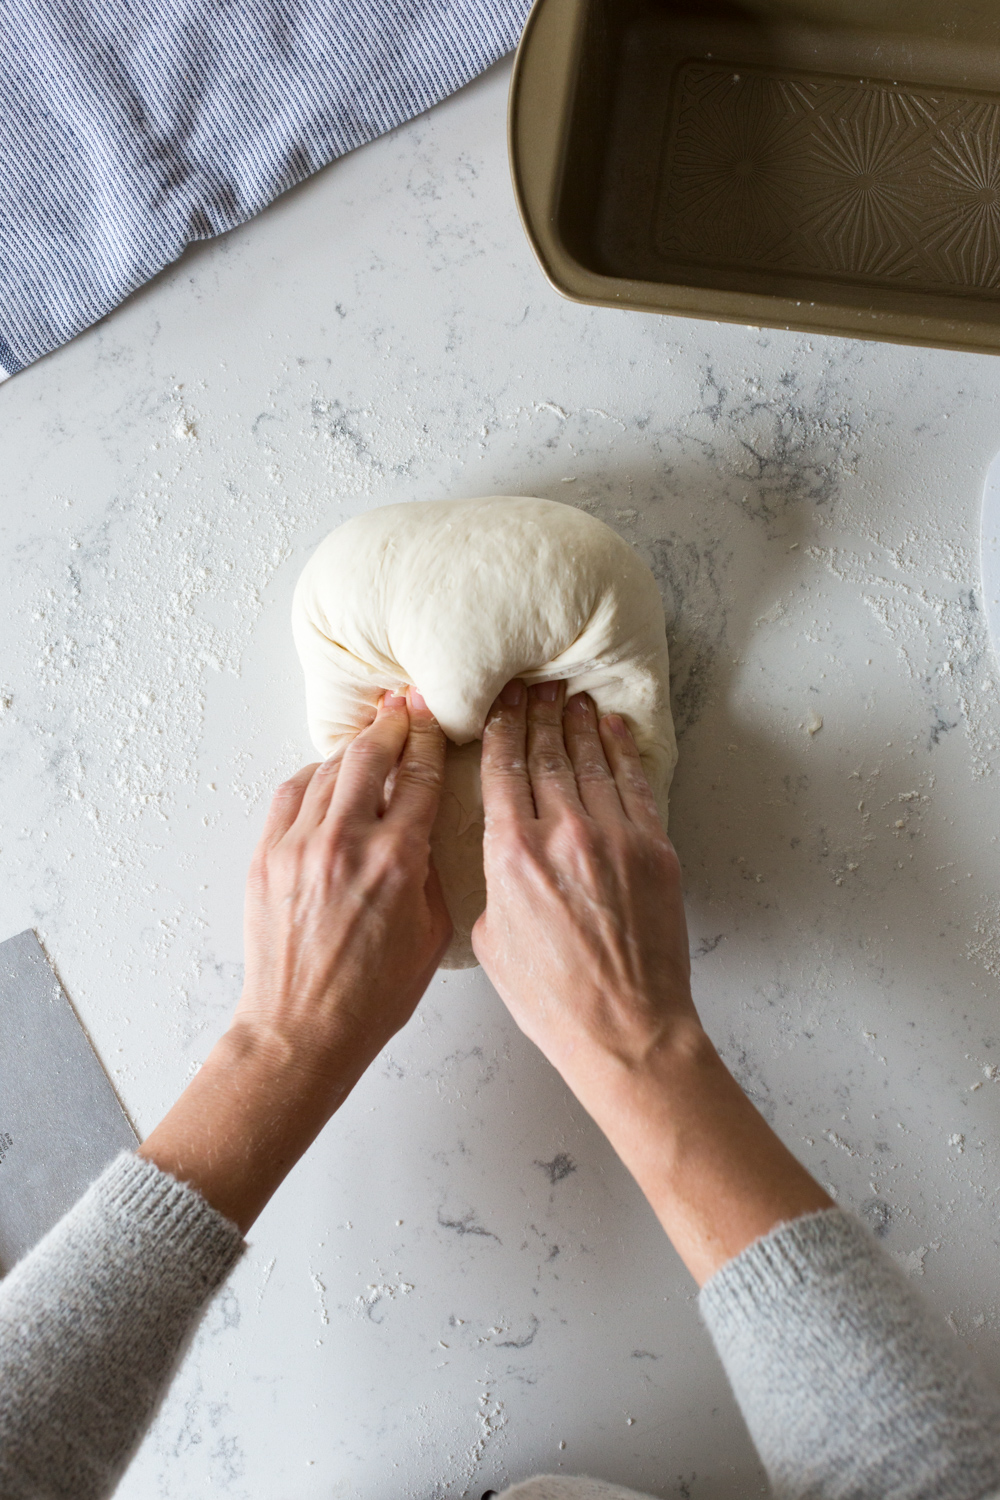 Shaping Best Basic White Bread